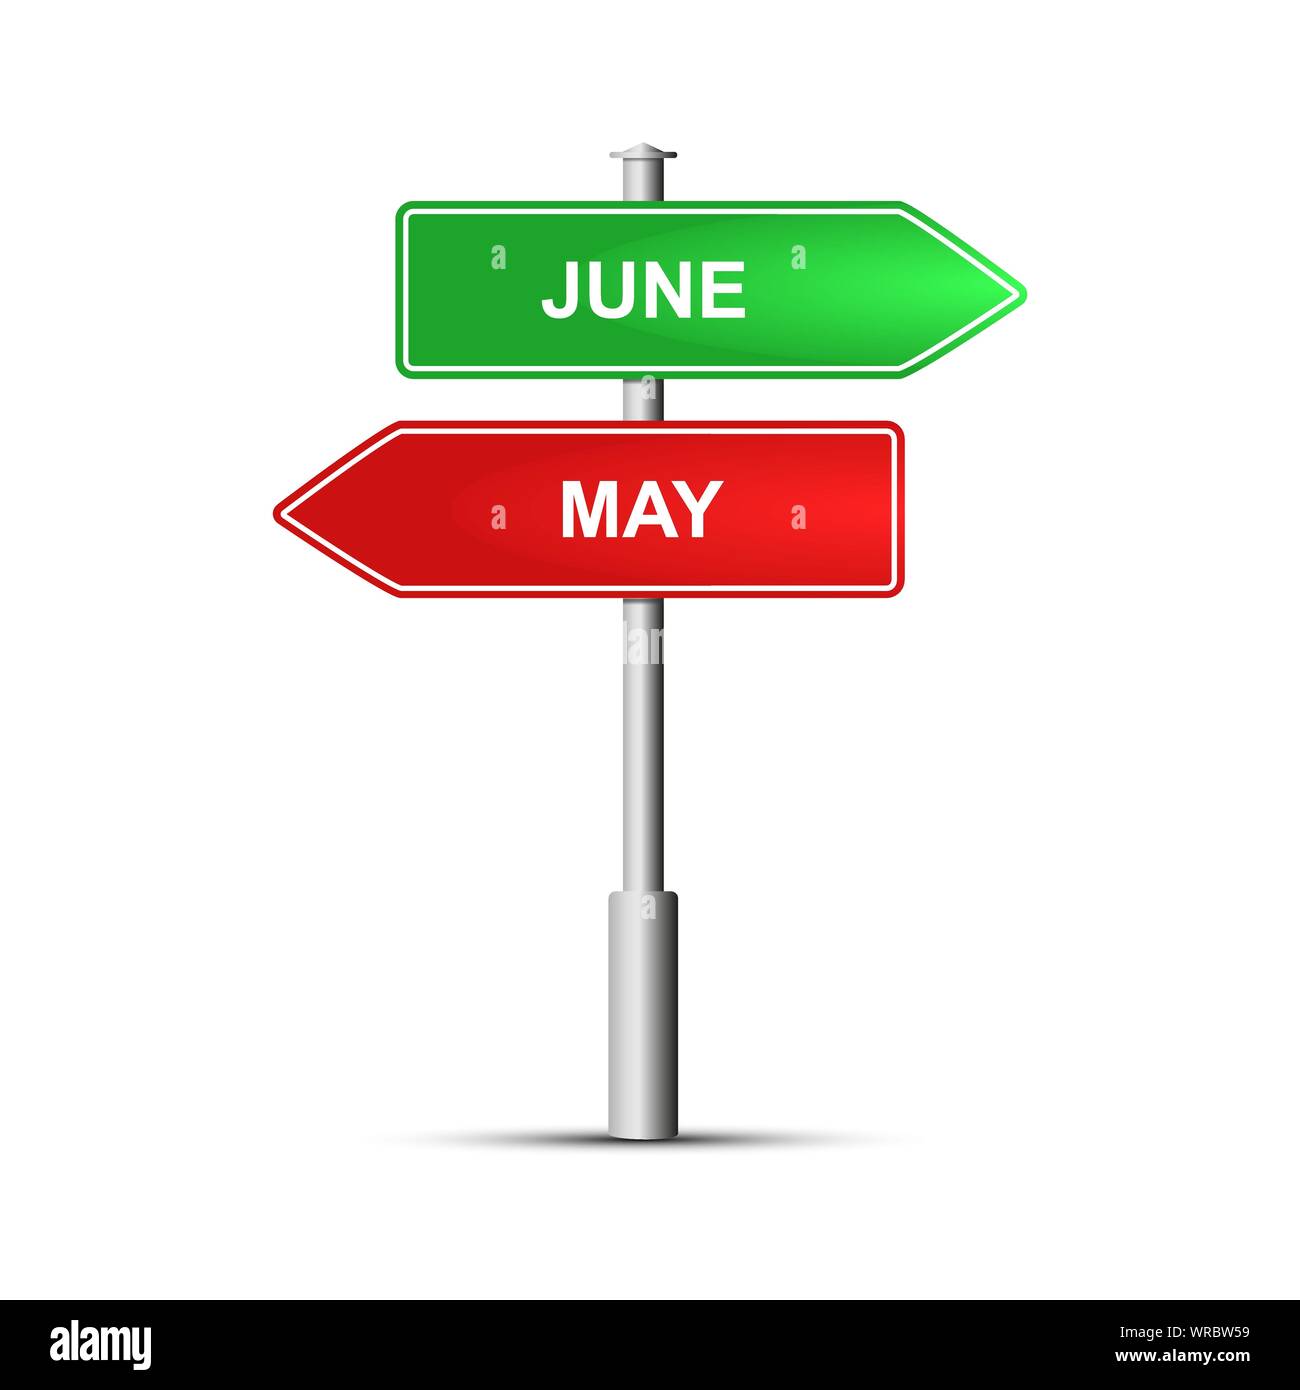 Il verde e il rosso cartello stradale con il nome dei mesi dell'anno Giugno e maggio. Illustrazione Vettoriale